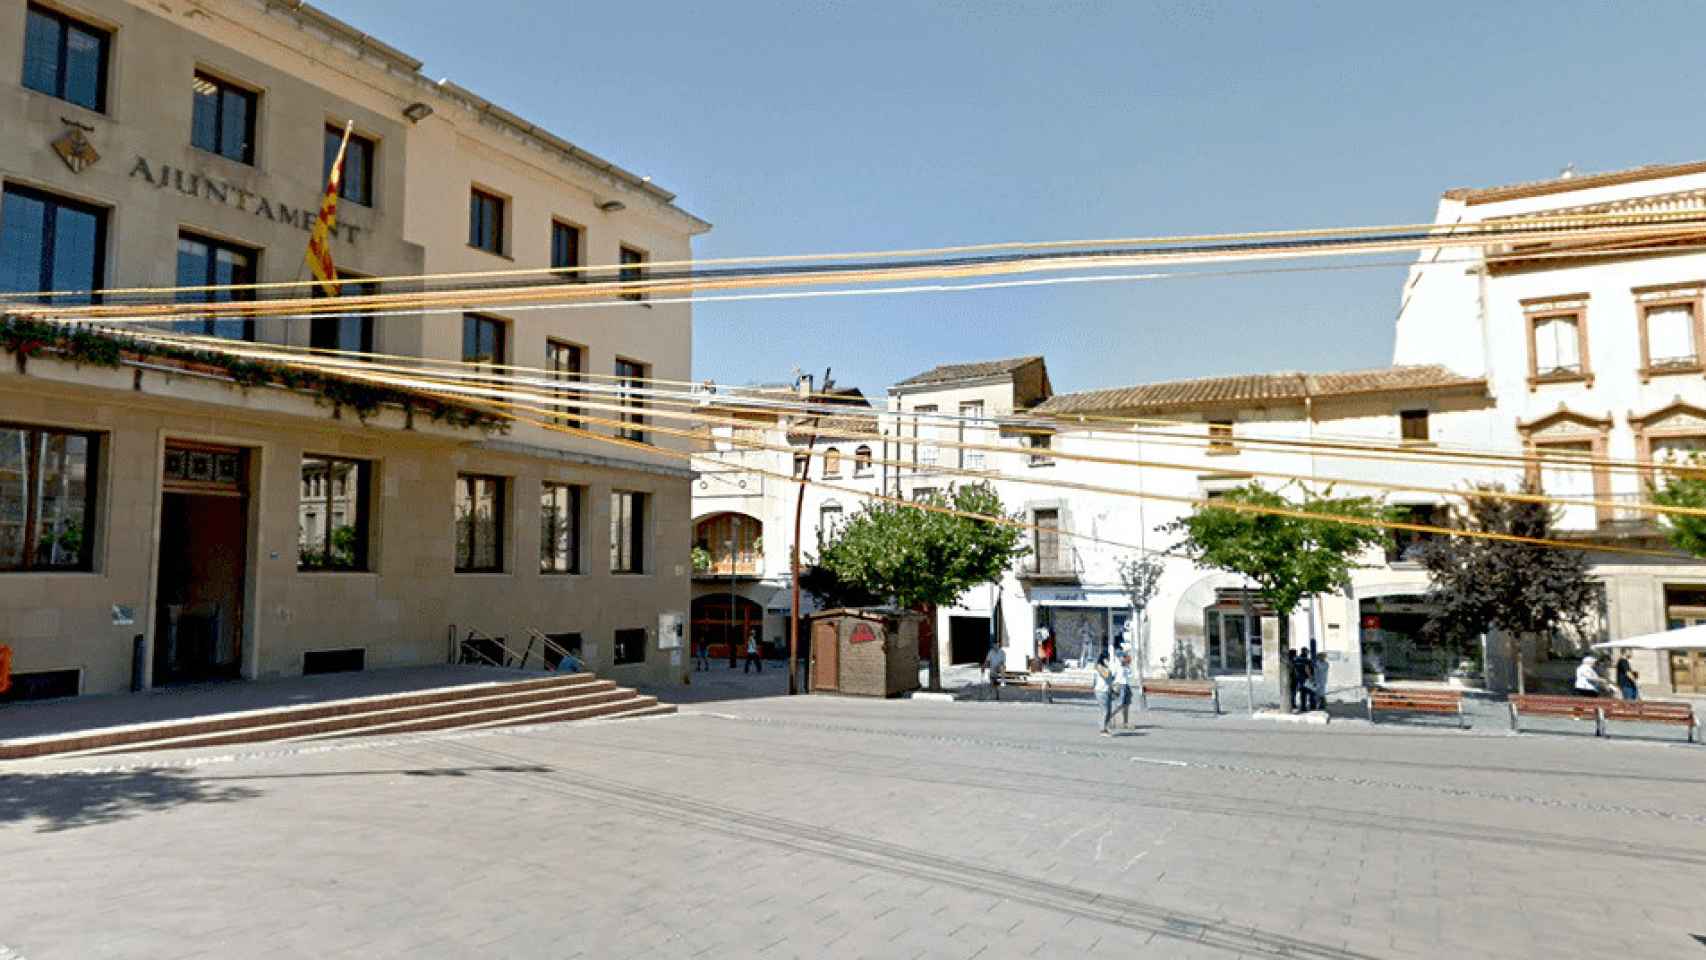 Ajuntament de La Garriga